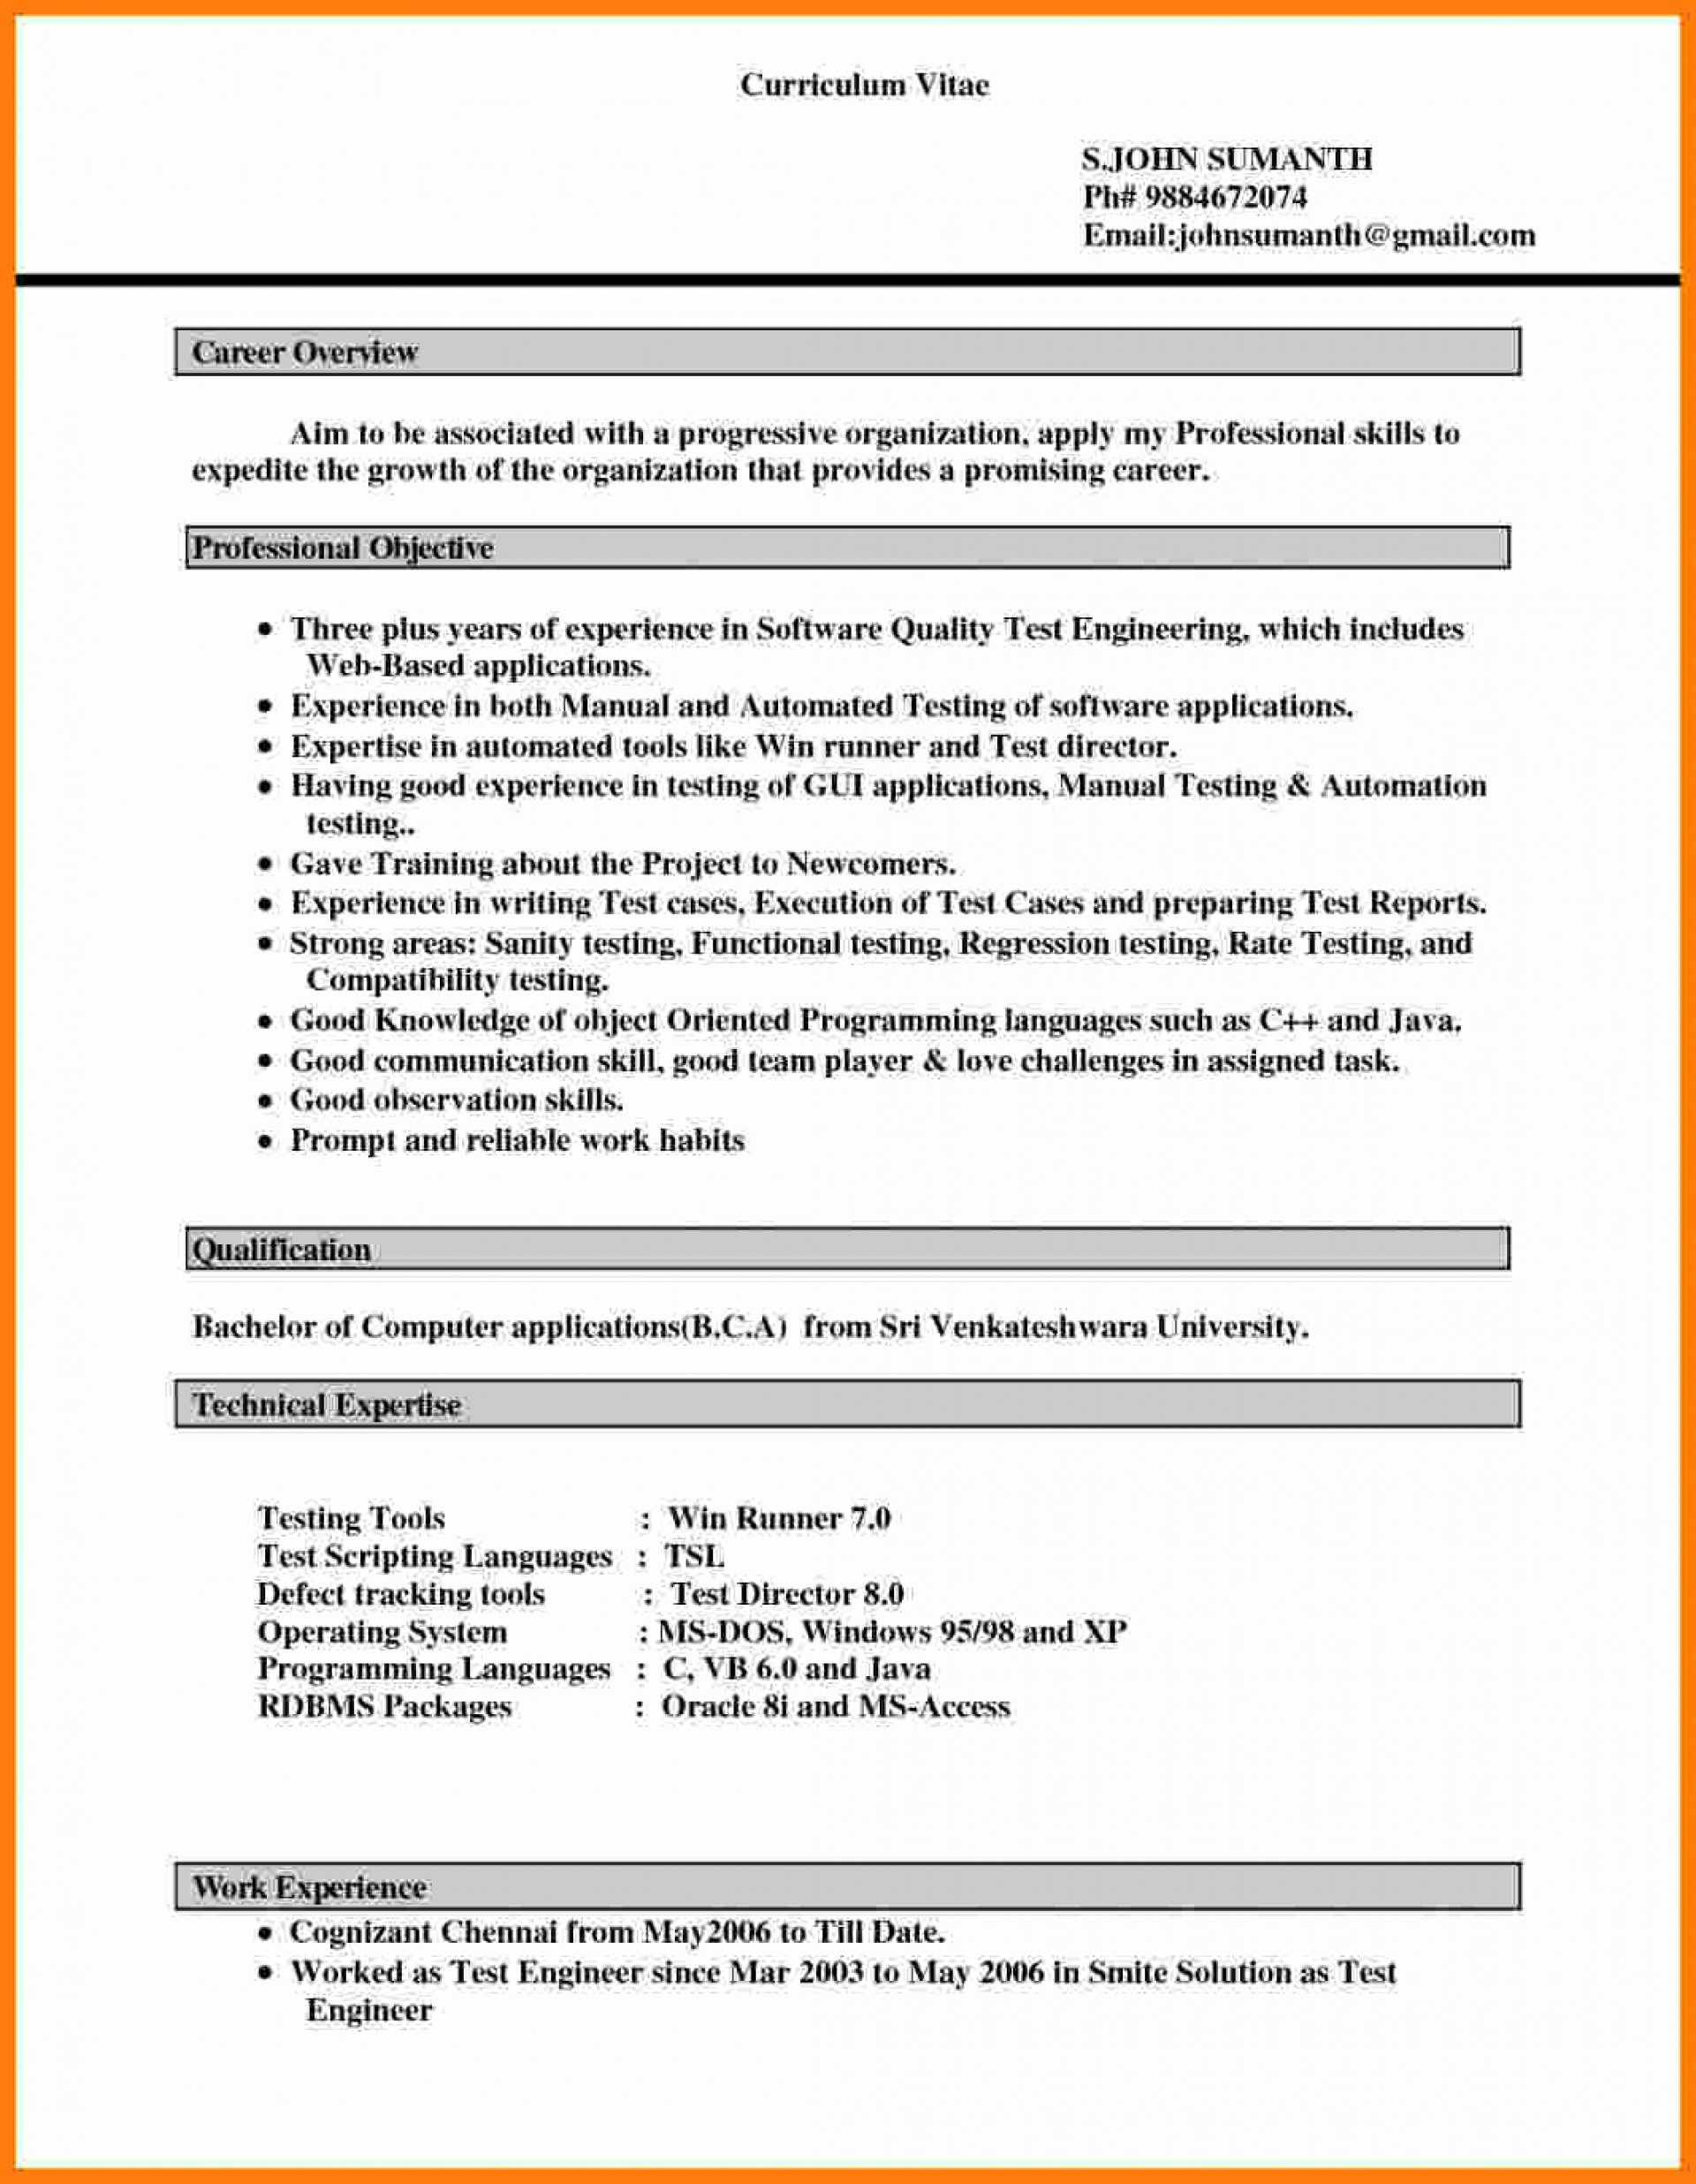 029 Resume Templates For Microsoft Word Lovely Cv Layout Within Resume Templates Microsoft Word 2010